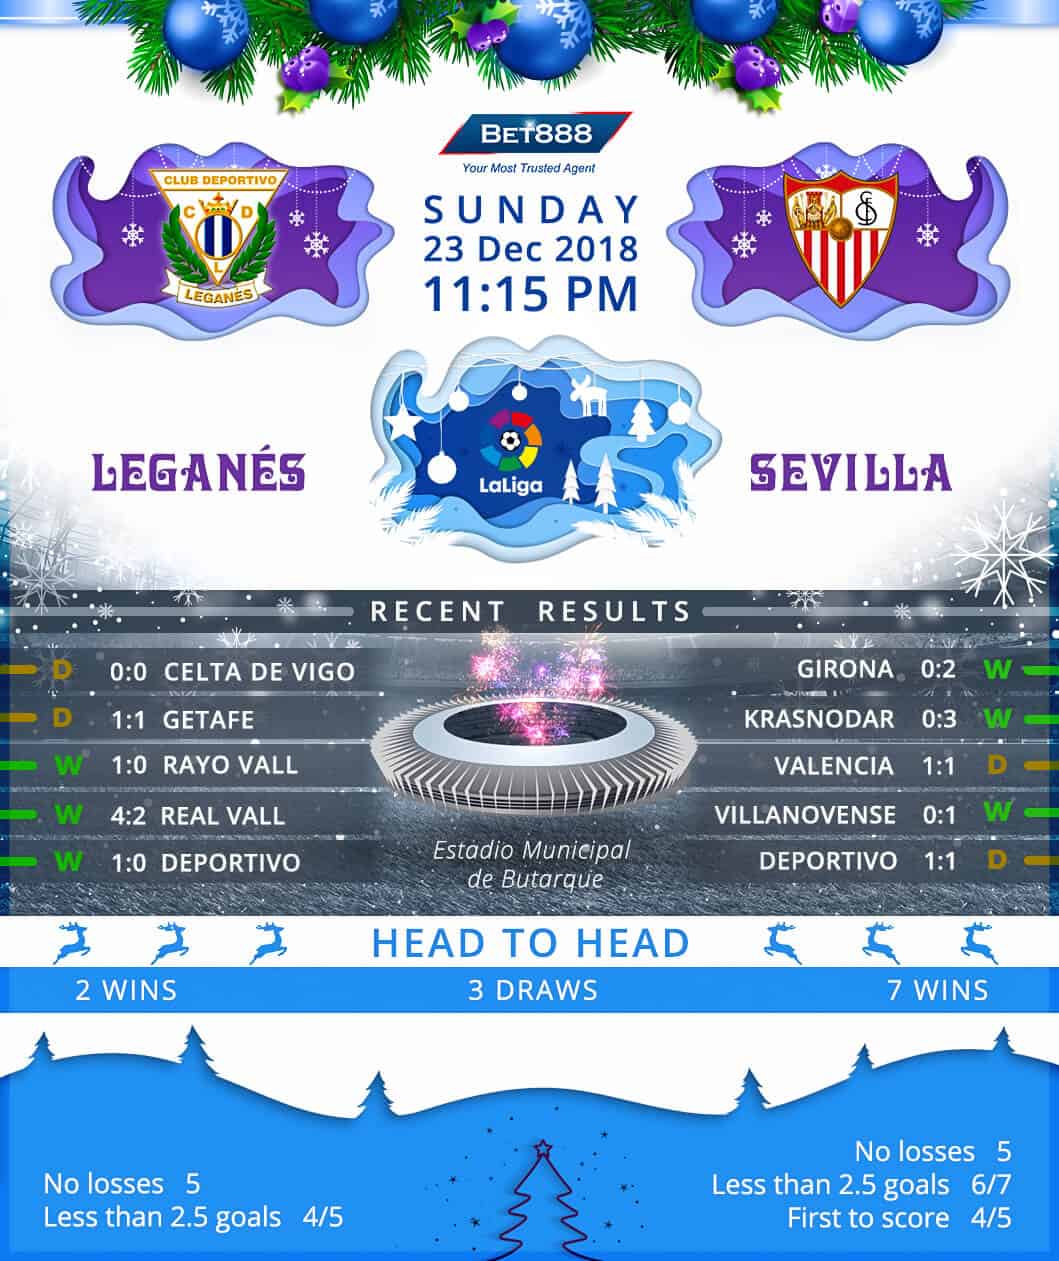 Leganes vs Sevilla 23/12/18